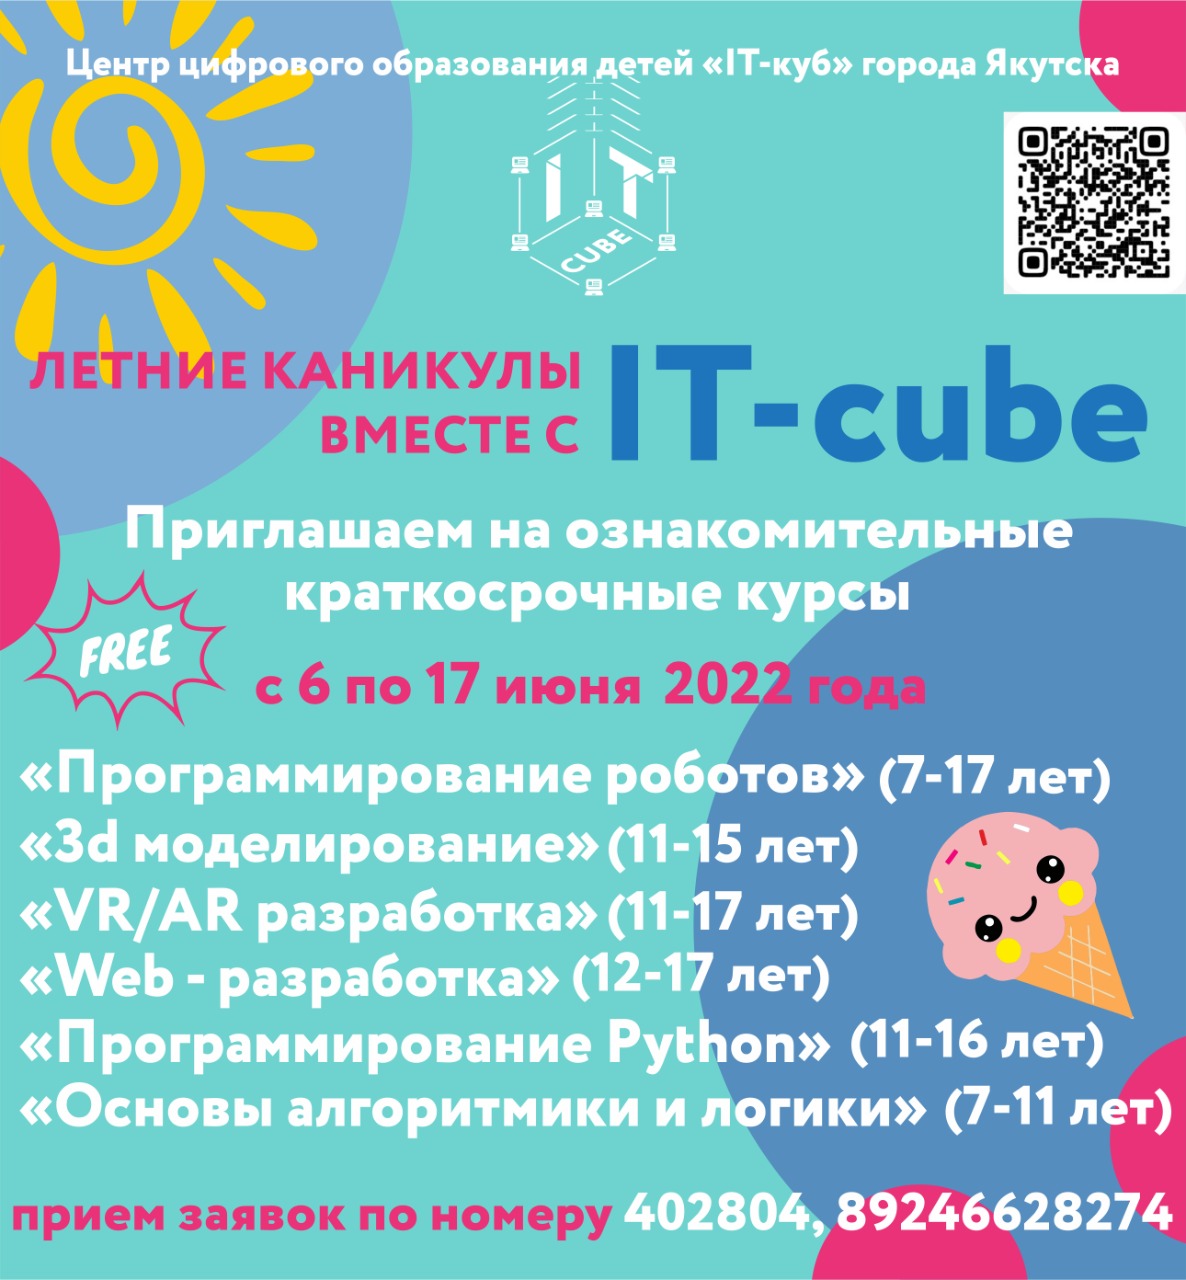 Центр цифрового образования «IT-куб» Якутска приглашает школьников на ознакомительные курсы